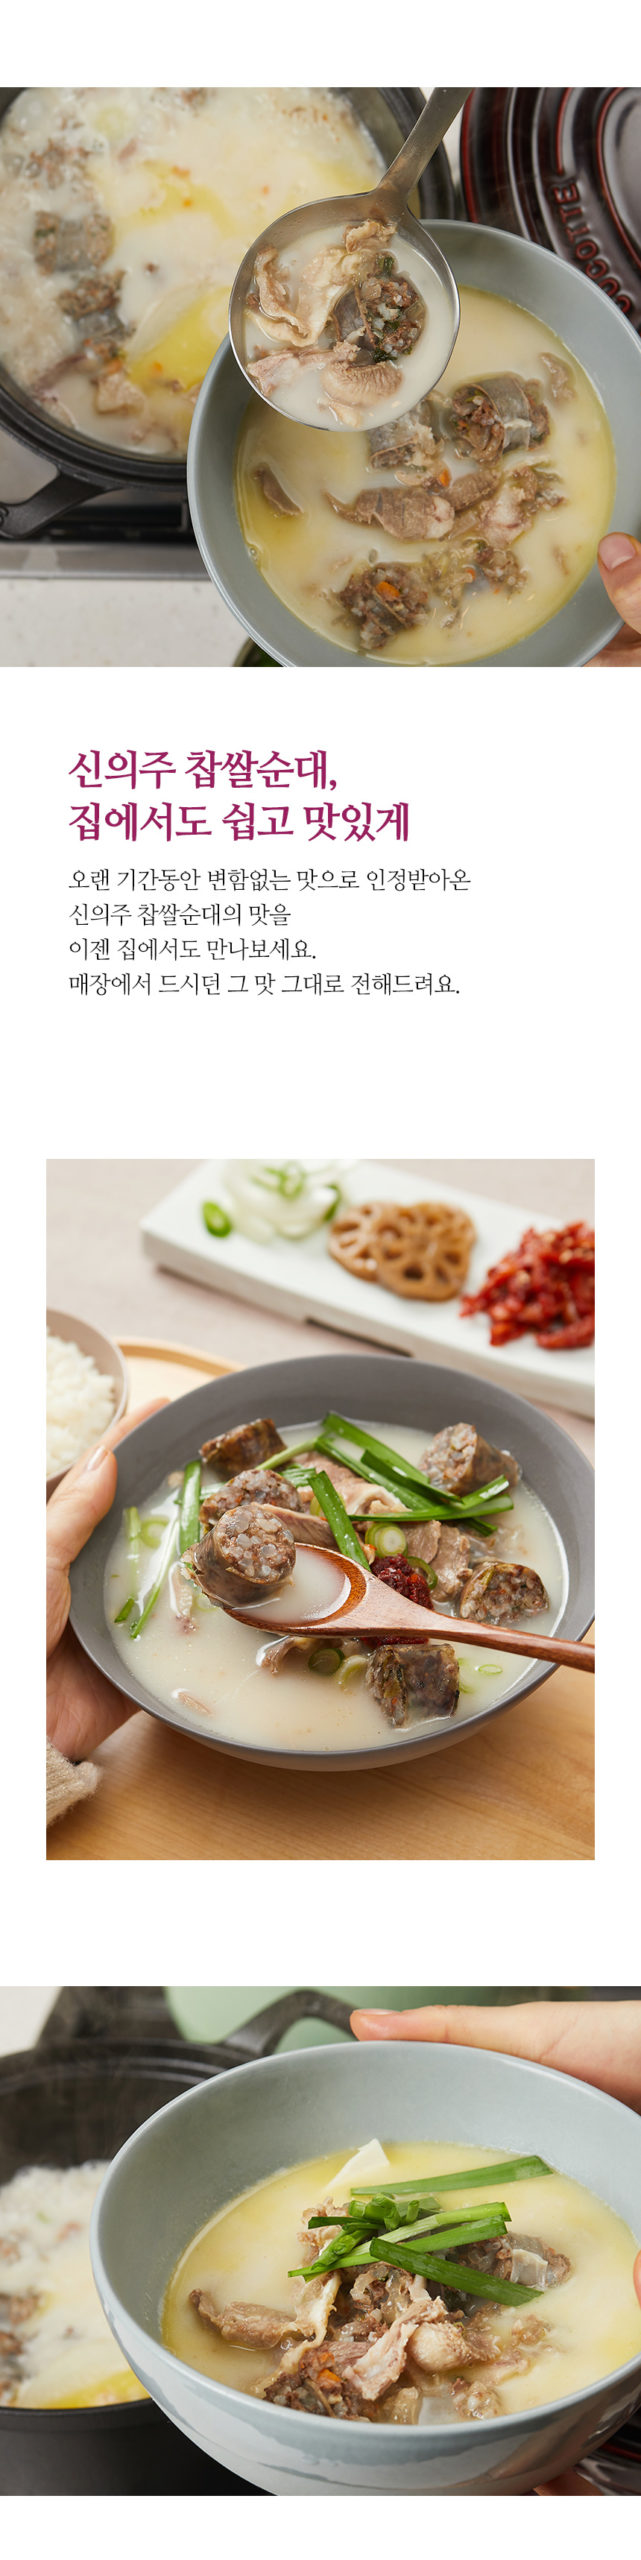 韓國食品-[신의주찹쌀순대] 찹쌀순대국 600g